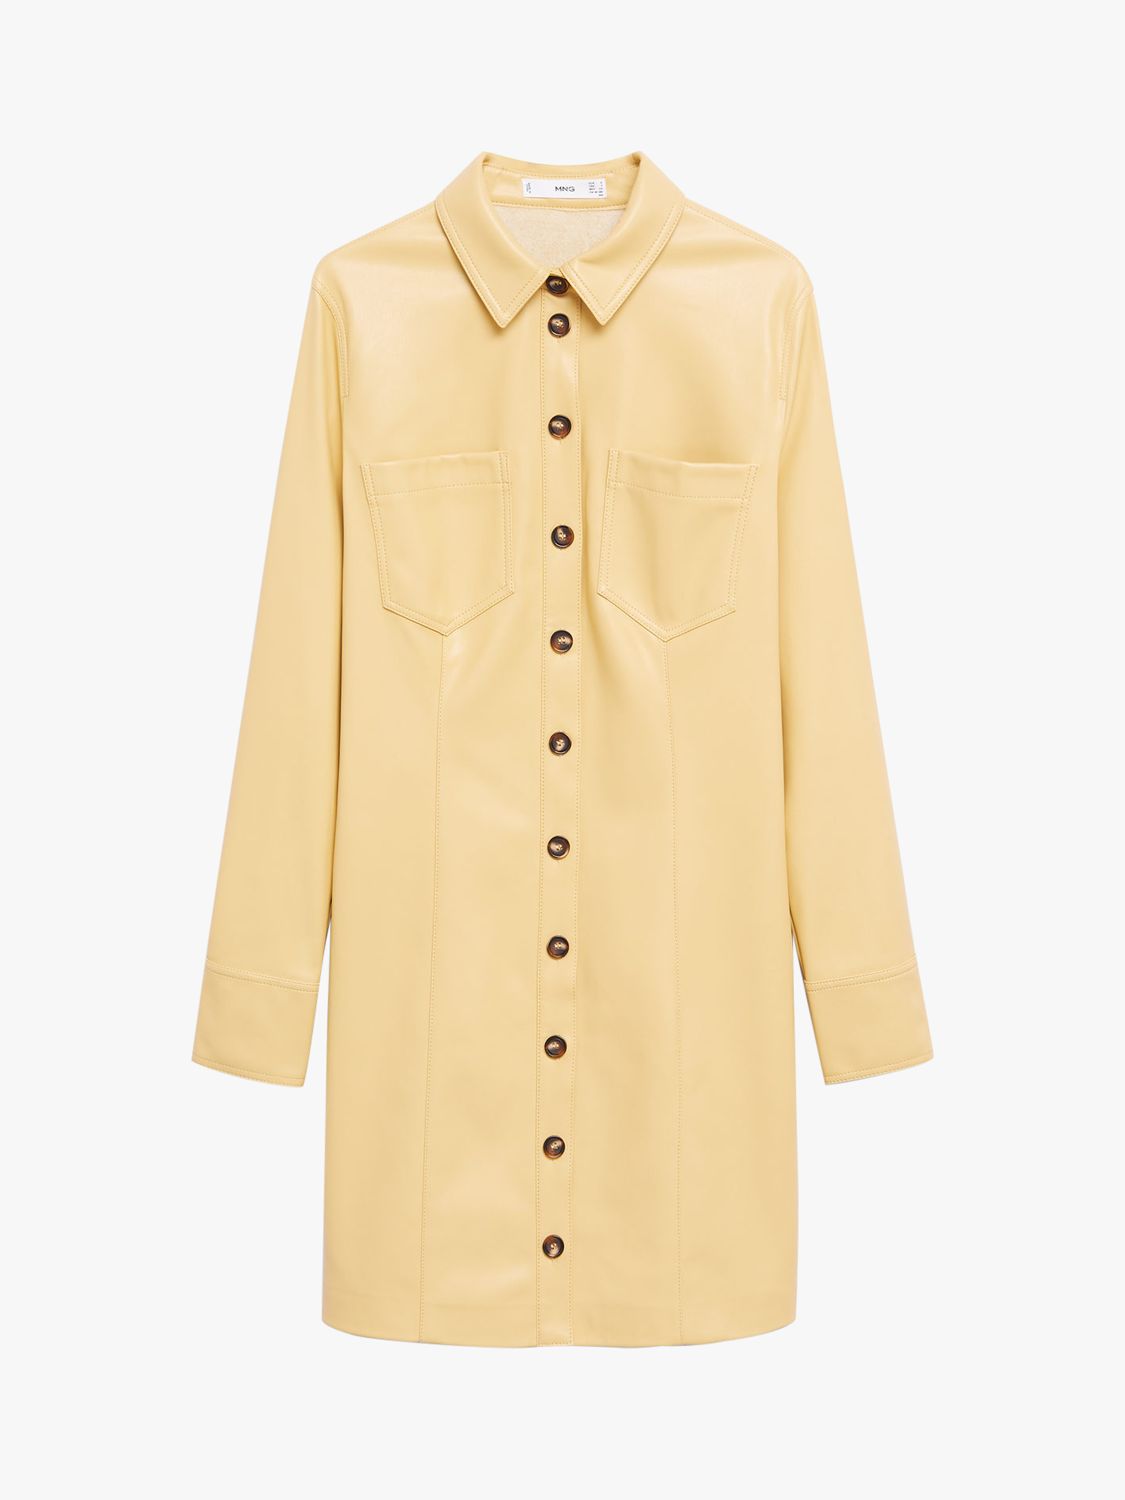 Mango Faux Leather Button Up Mini Shirt Dress, Yellow